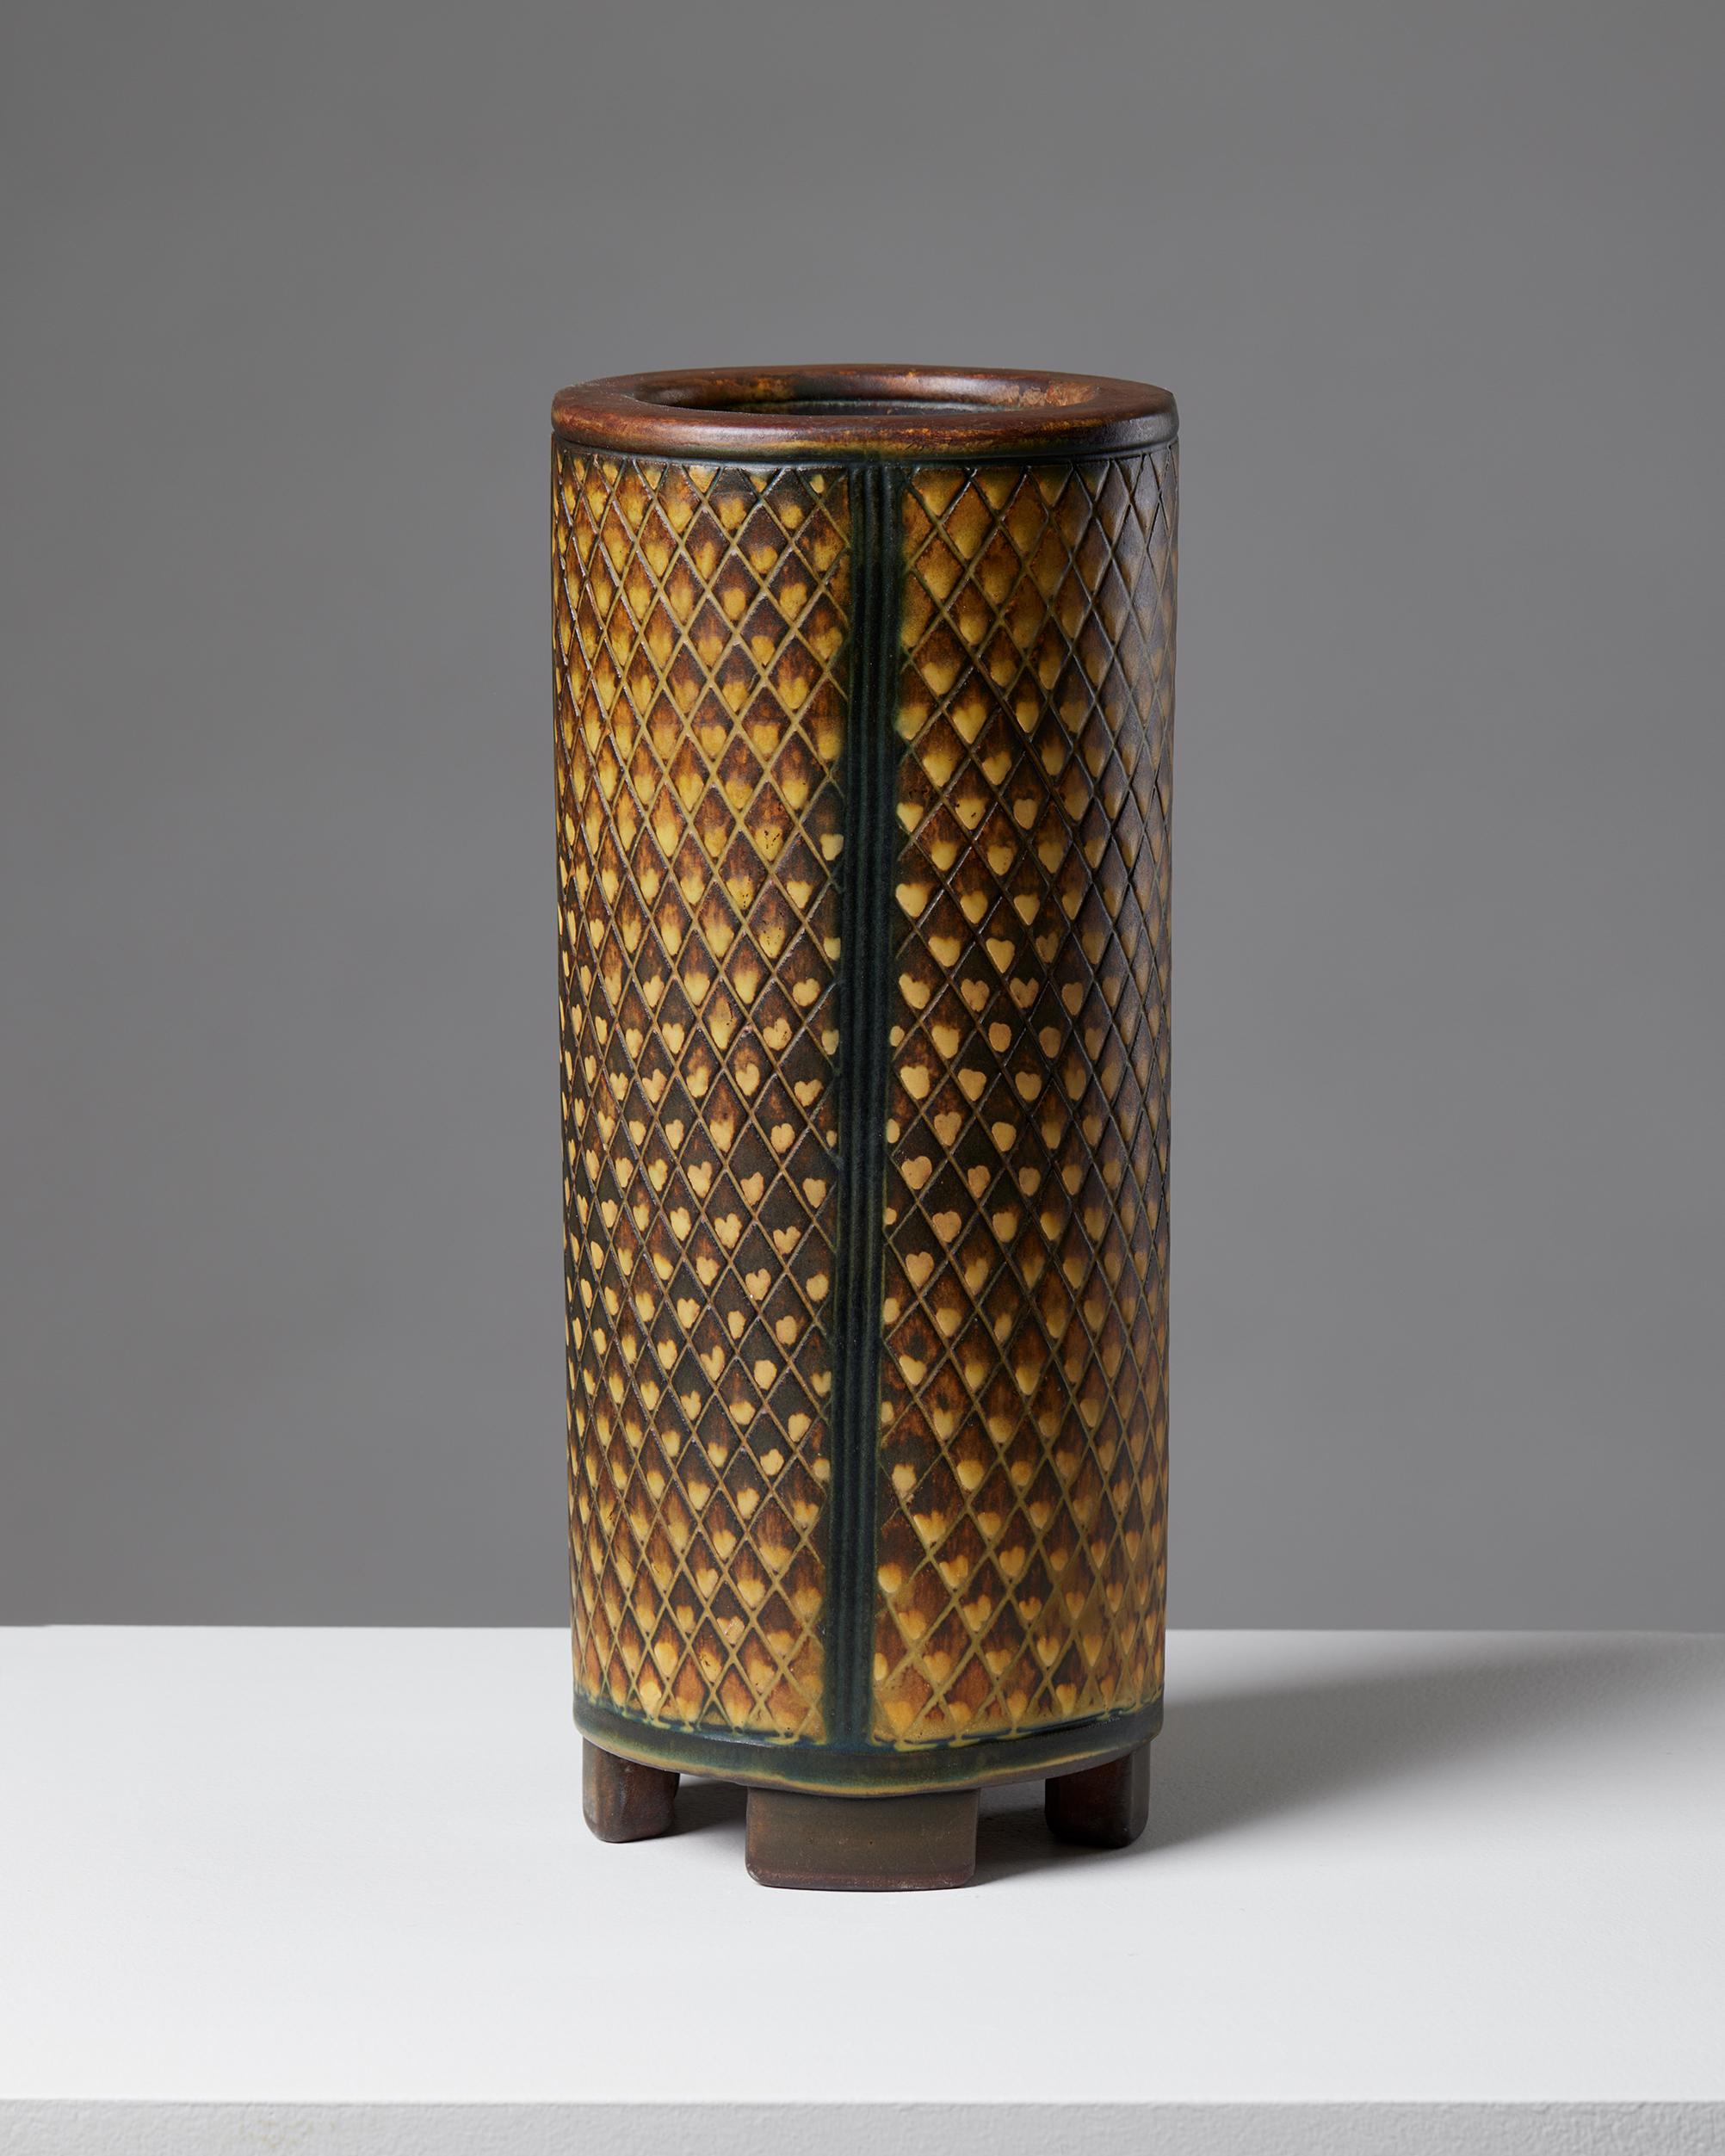 Vase ‘Farsta’ designed by Wilhelm Kåge for Gustavsberg,
Sweden, 1952.

Stoneware.

Signed.

H: 29.5 cm
Diameter: 12.5 cm.